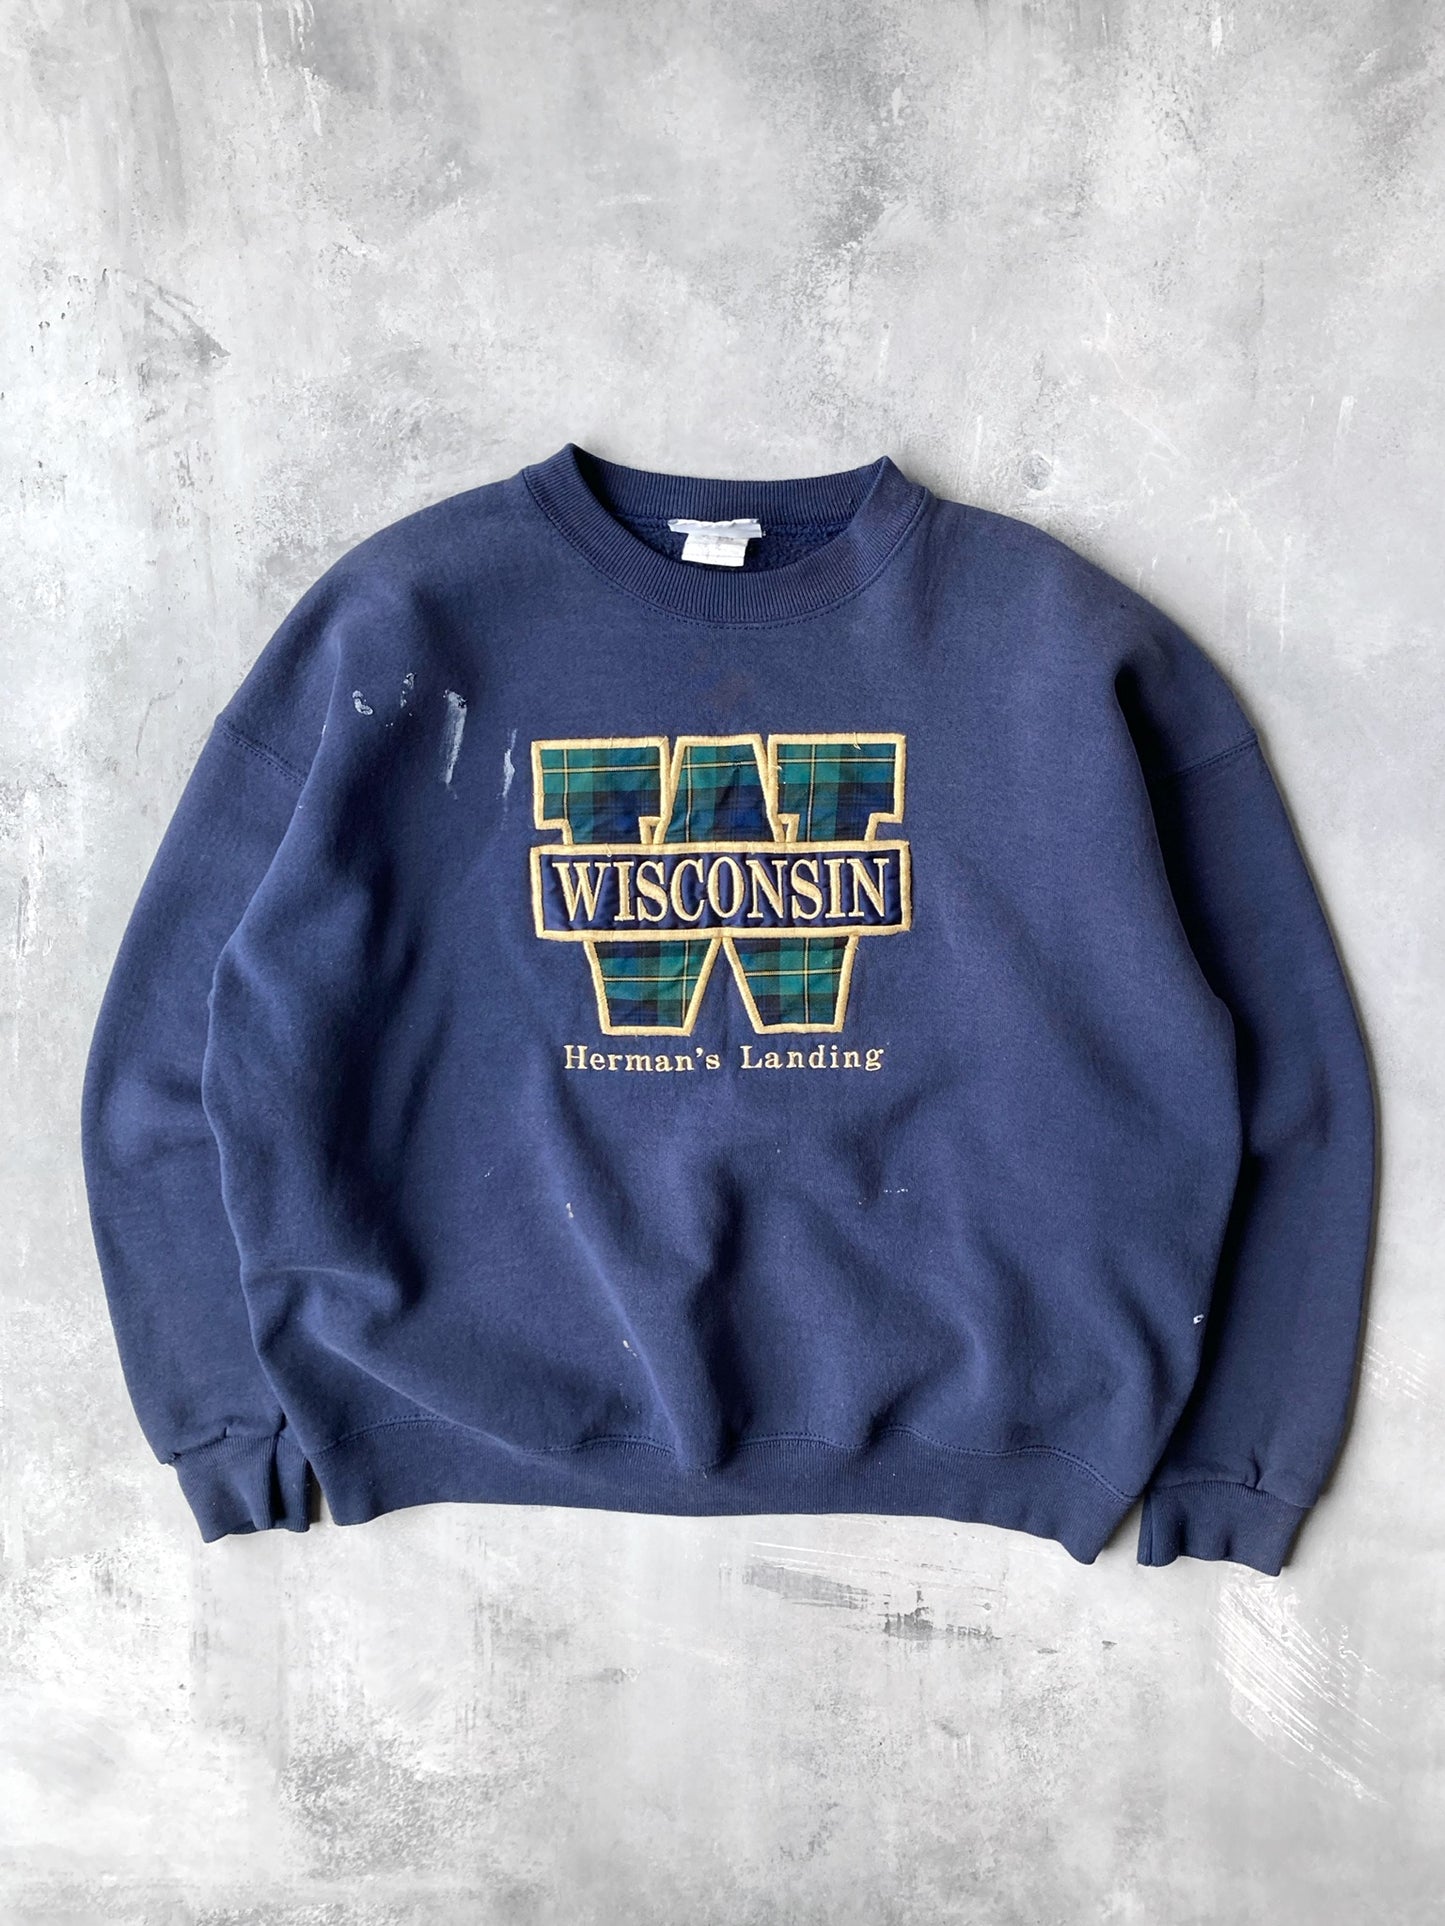 Herman's Landing Wisconsin Sweatshirt 90's - XL